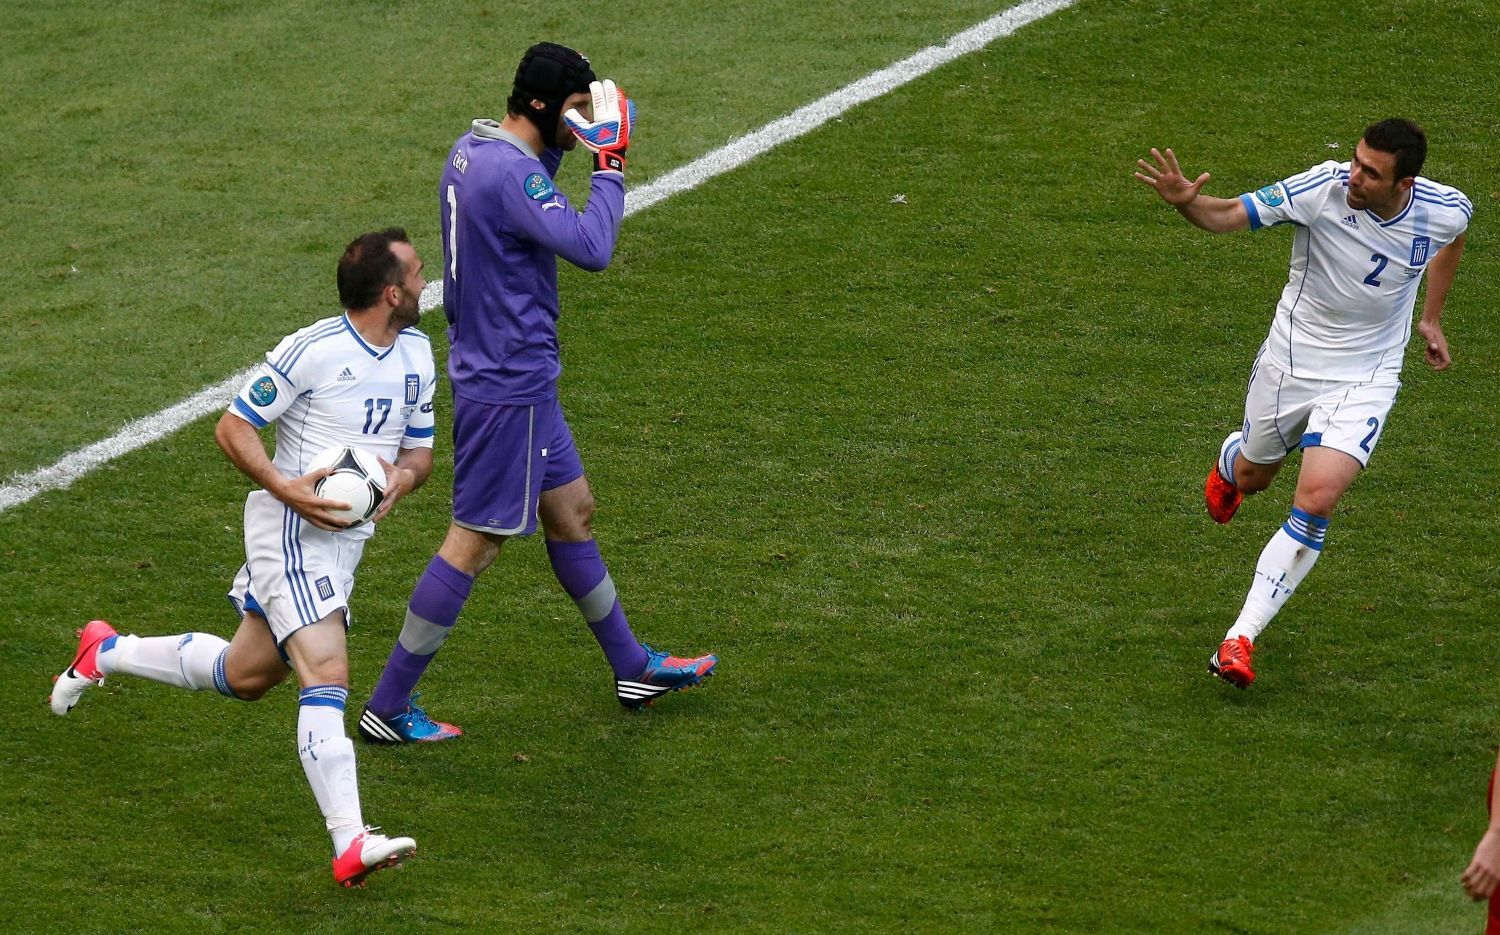 Zklamaný Petr Čech po inkasovaném gólu v utkání Řecko - Česká republika na Euru 2012